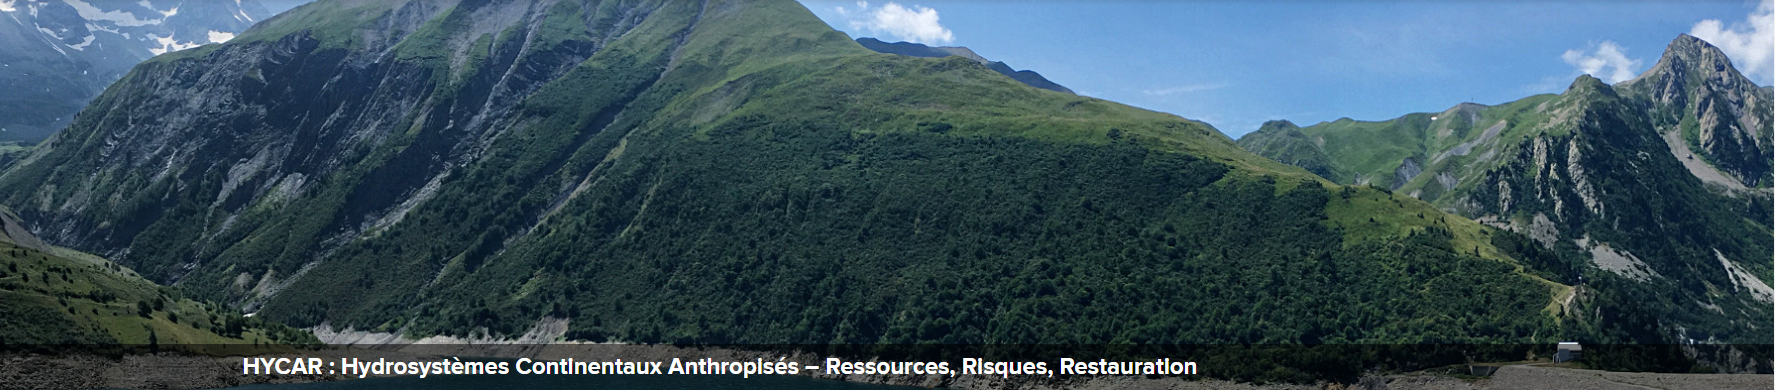 Hydrosystèmes Continentaux Anthropisés - Ressources, Risques, Restauration (HYCAR)